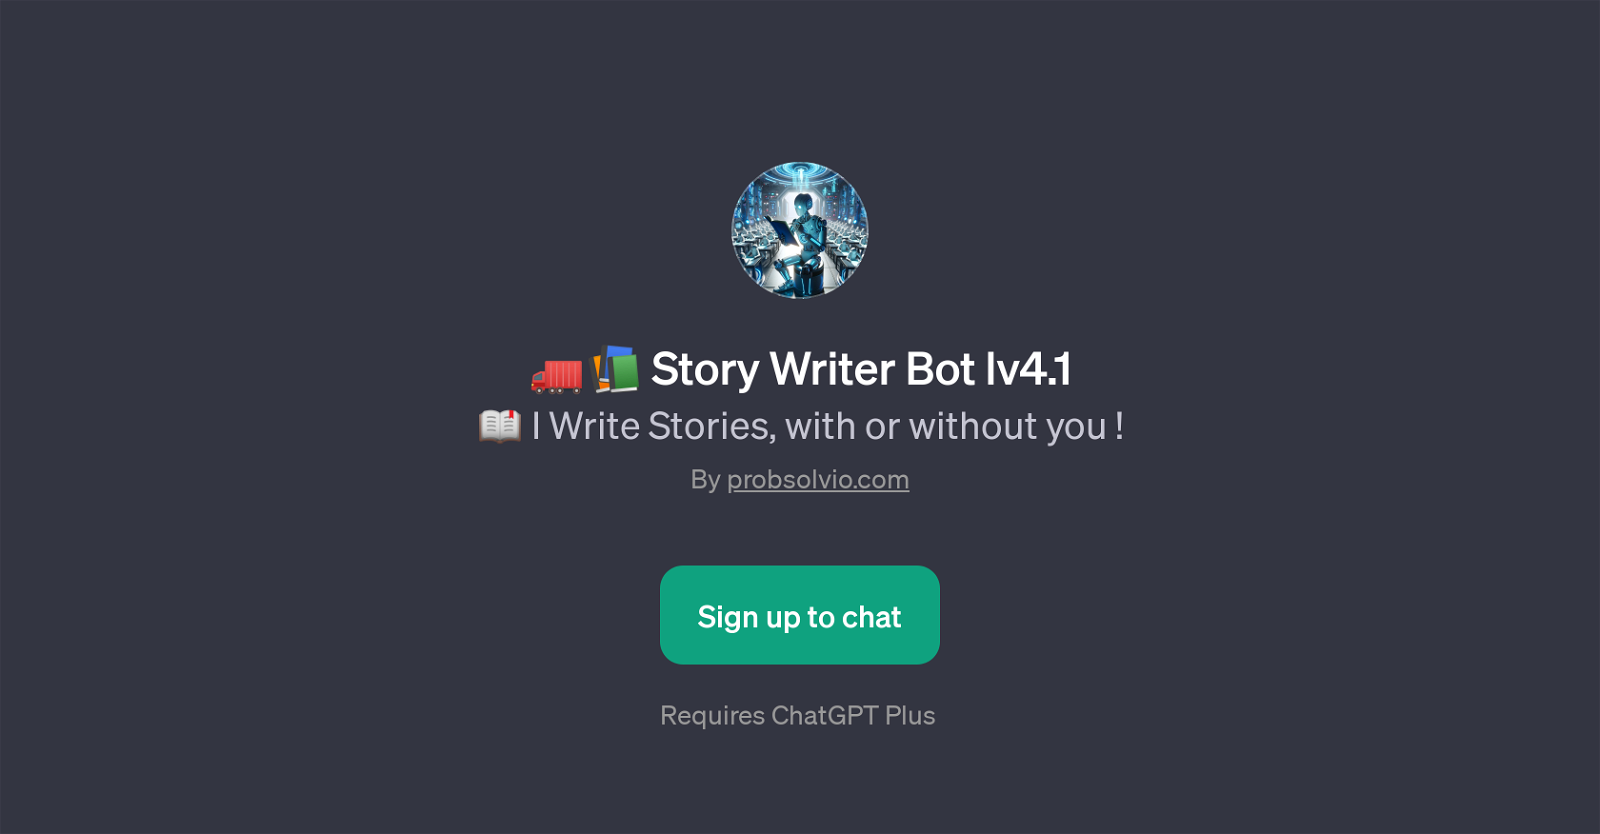 Story Writer Bot lv4.1 website